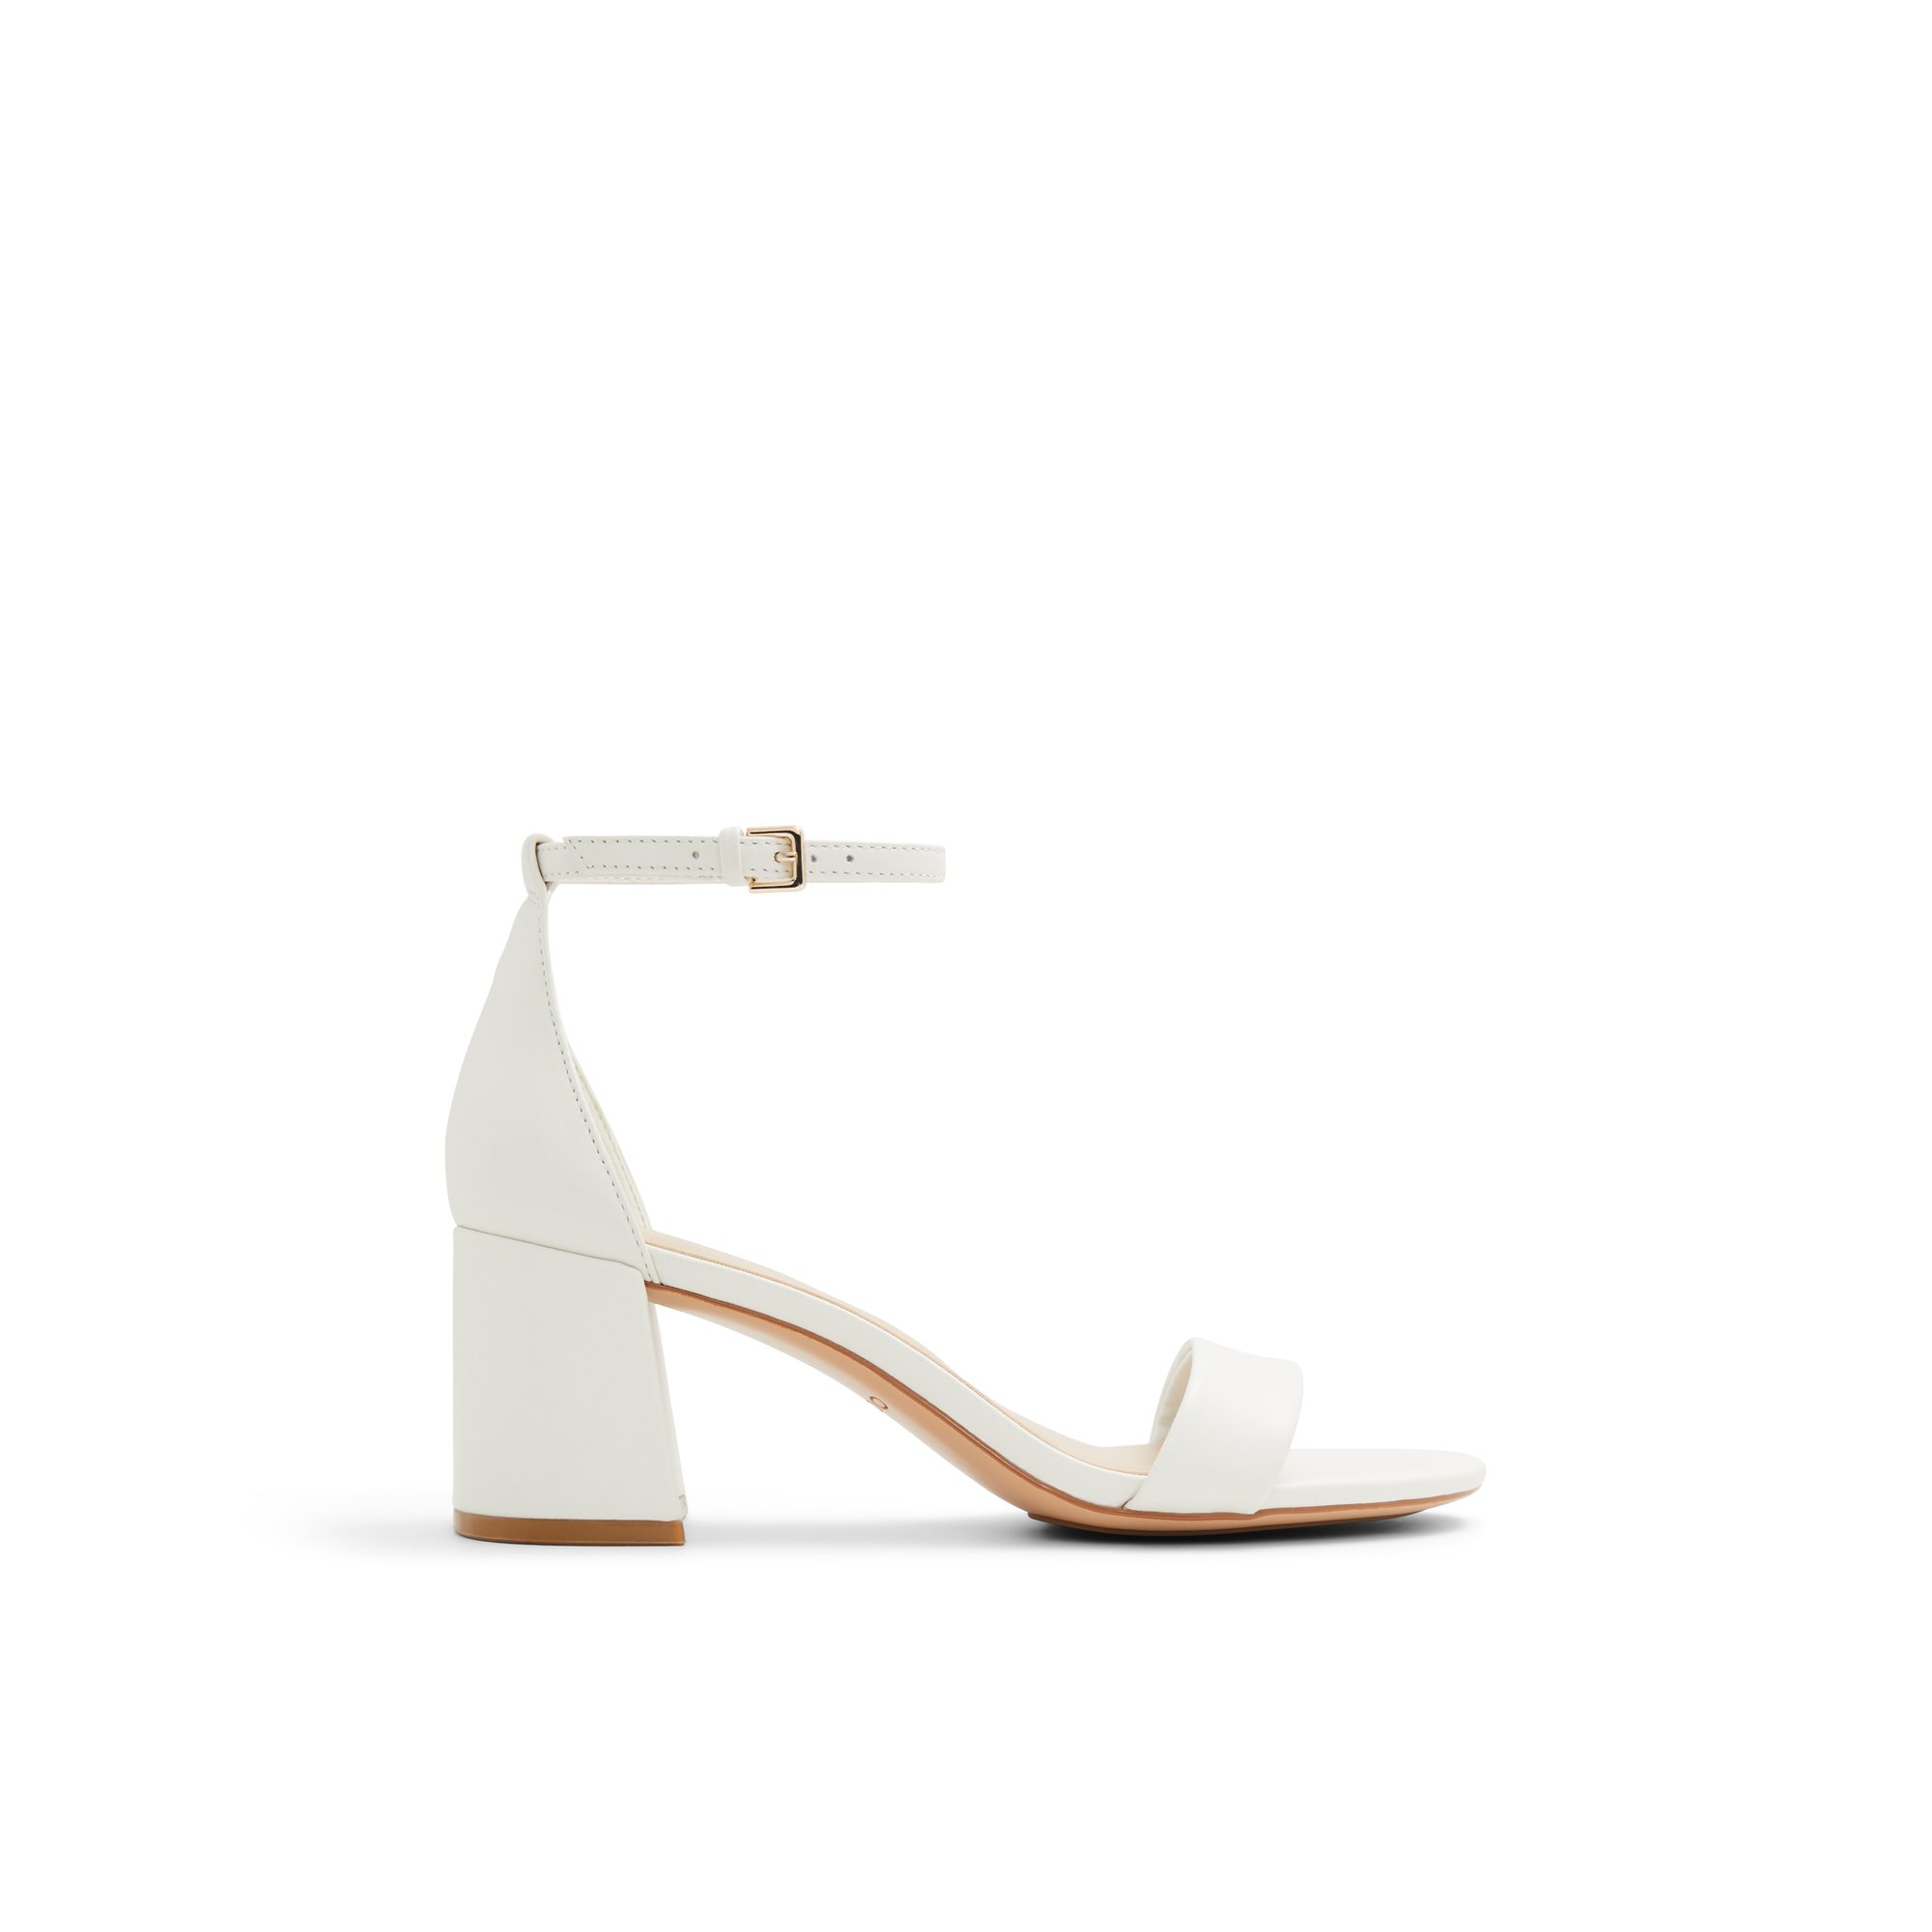 ALDO Pristine - Women's Strappy Sandal Sandals - White